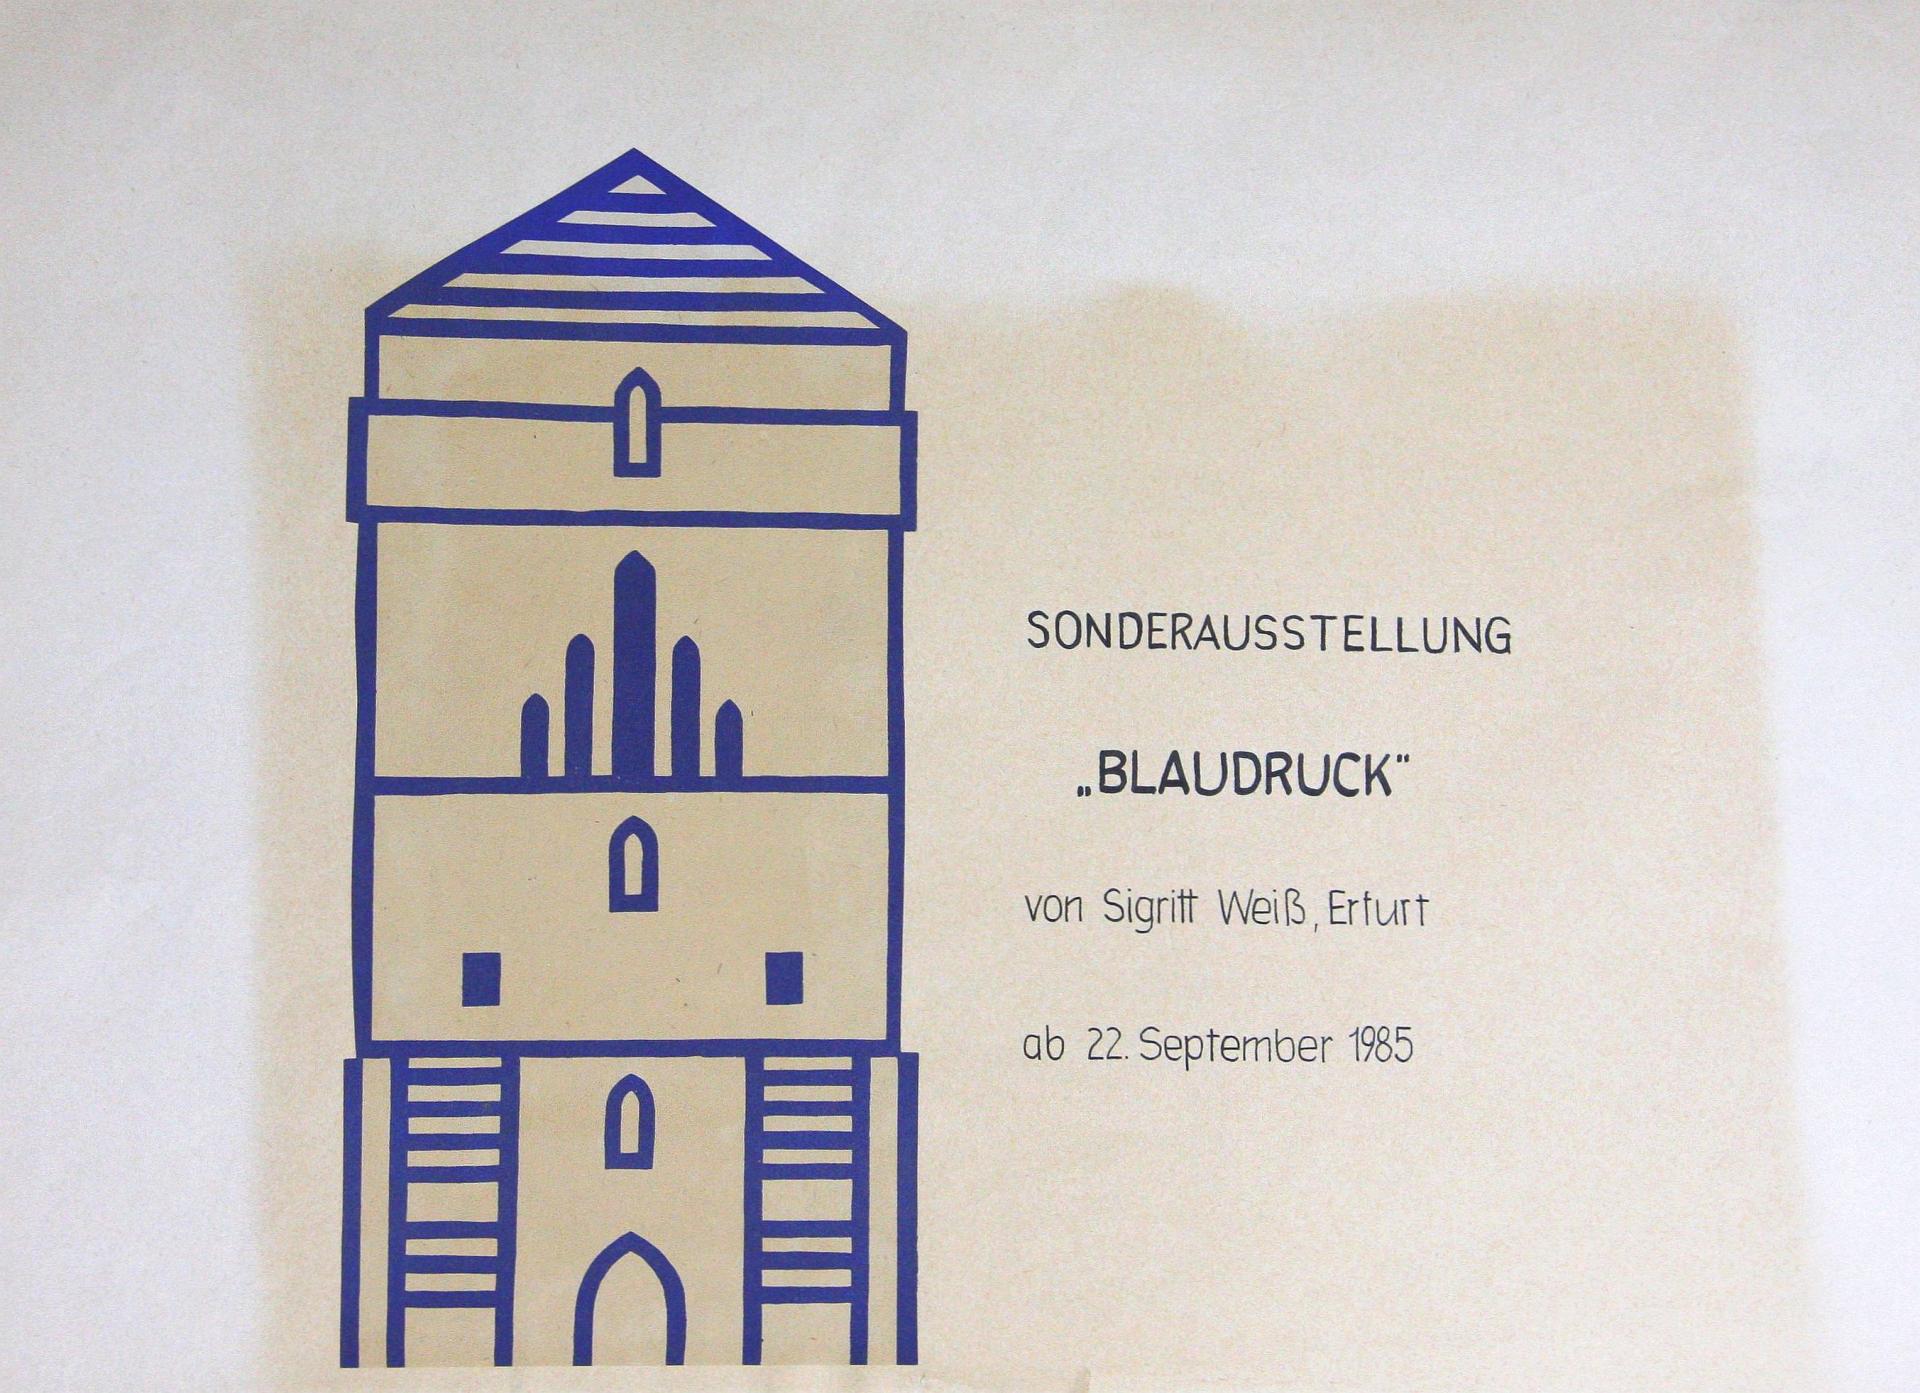 1985 Blaudruck von Sigritt Weiß, Erfurt